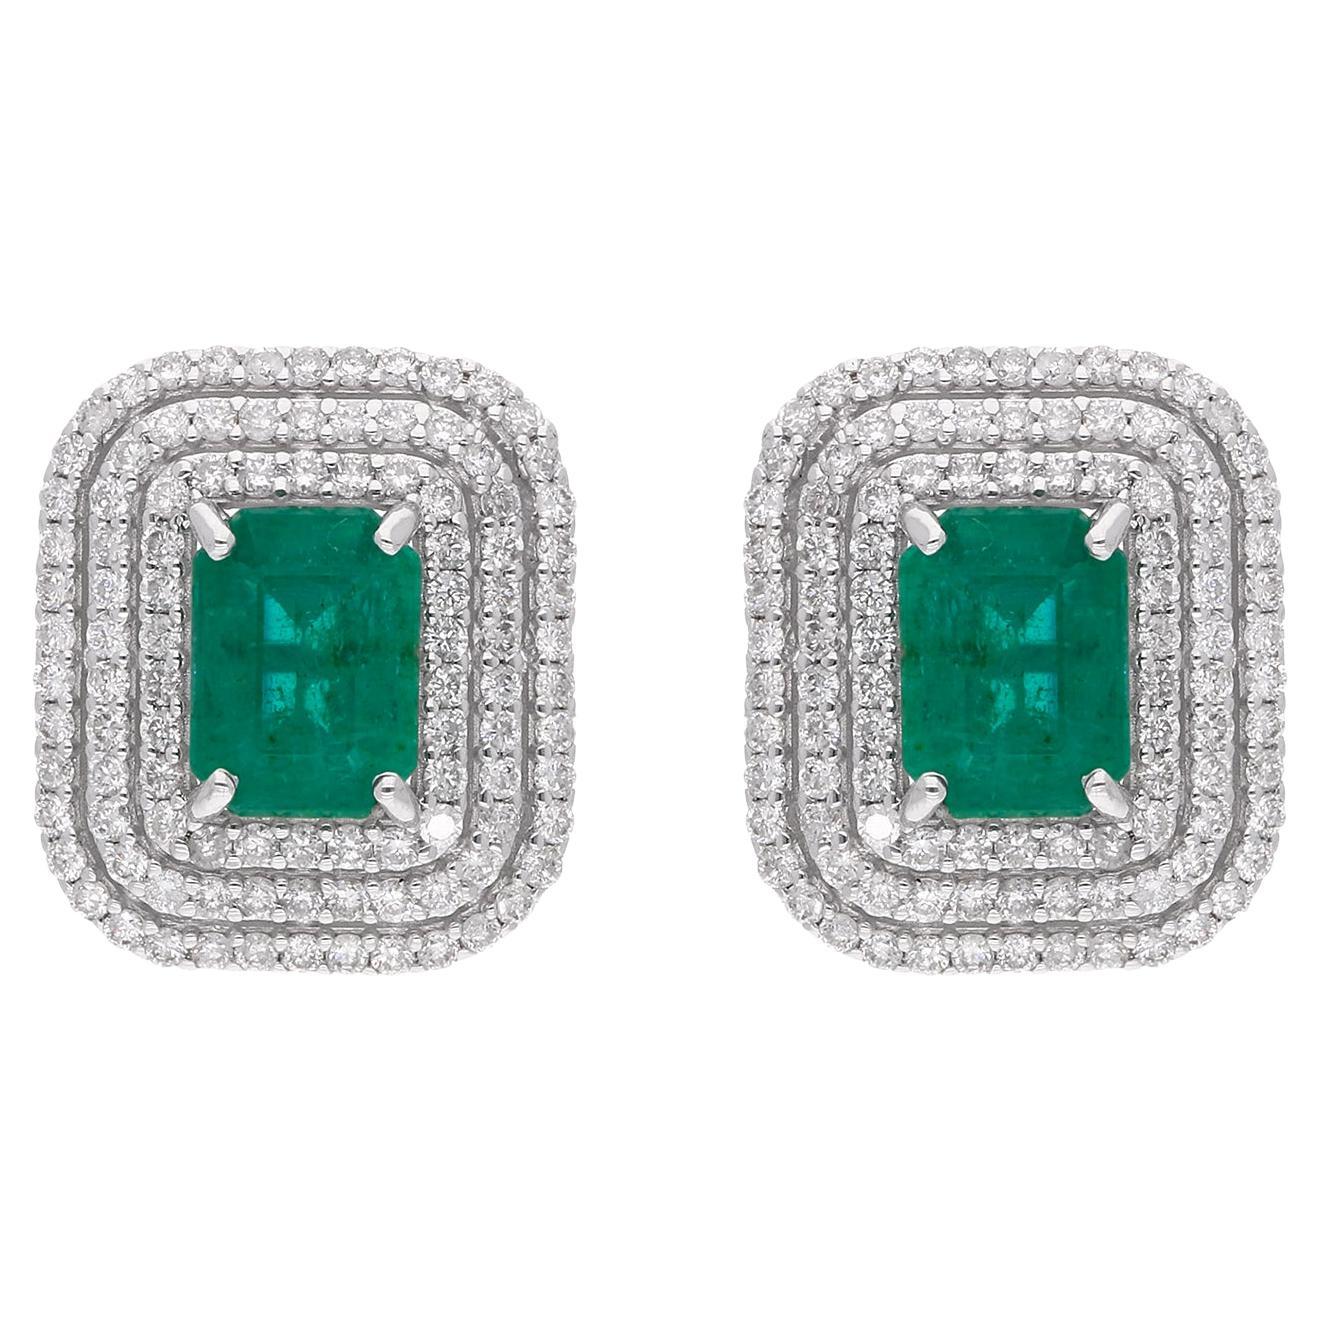 Zambian Emerald Gemstone Stud Earrings Pave Diamond 18 Karat White Gold Jewelry